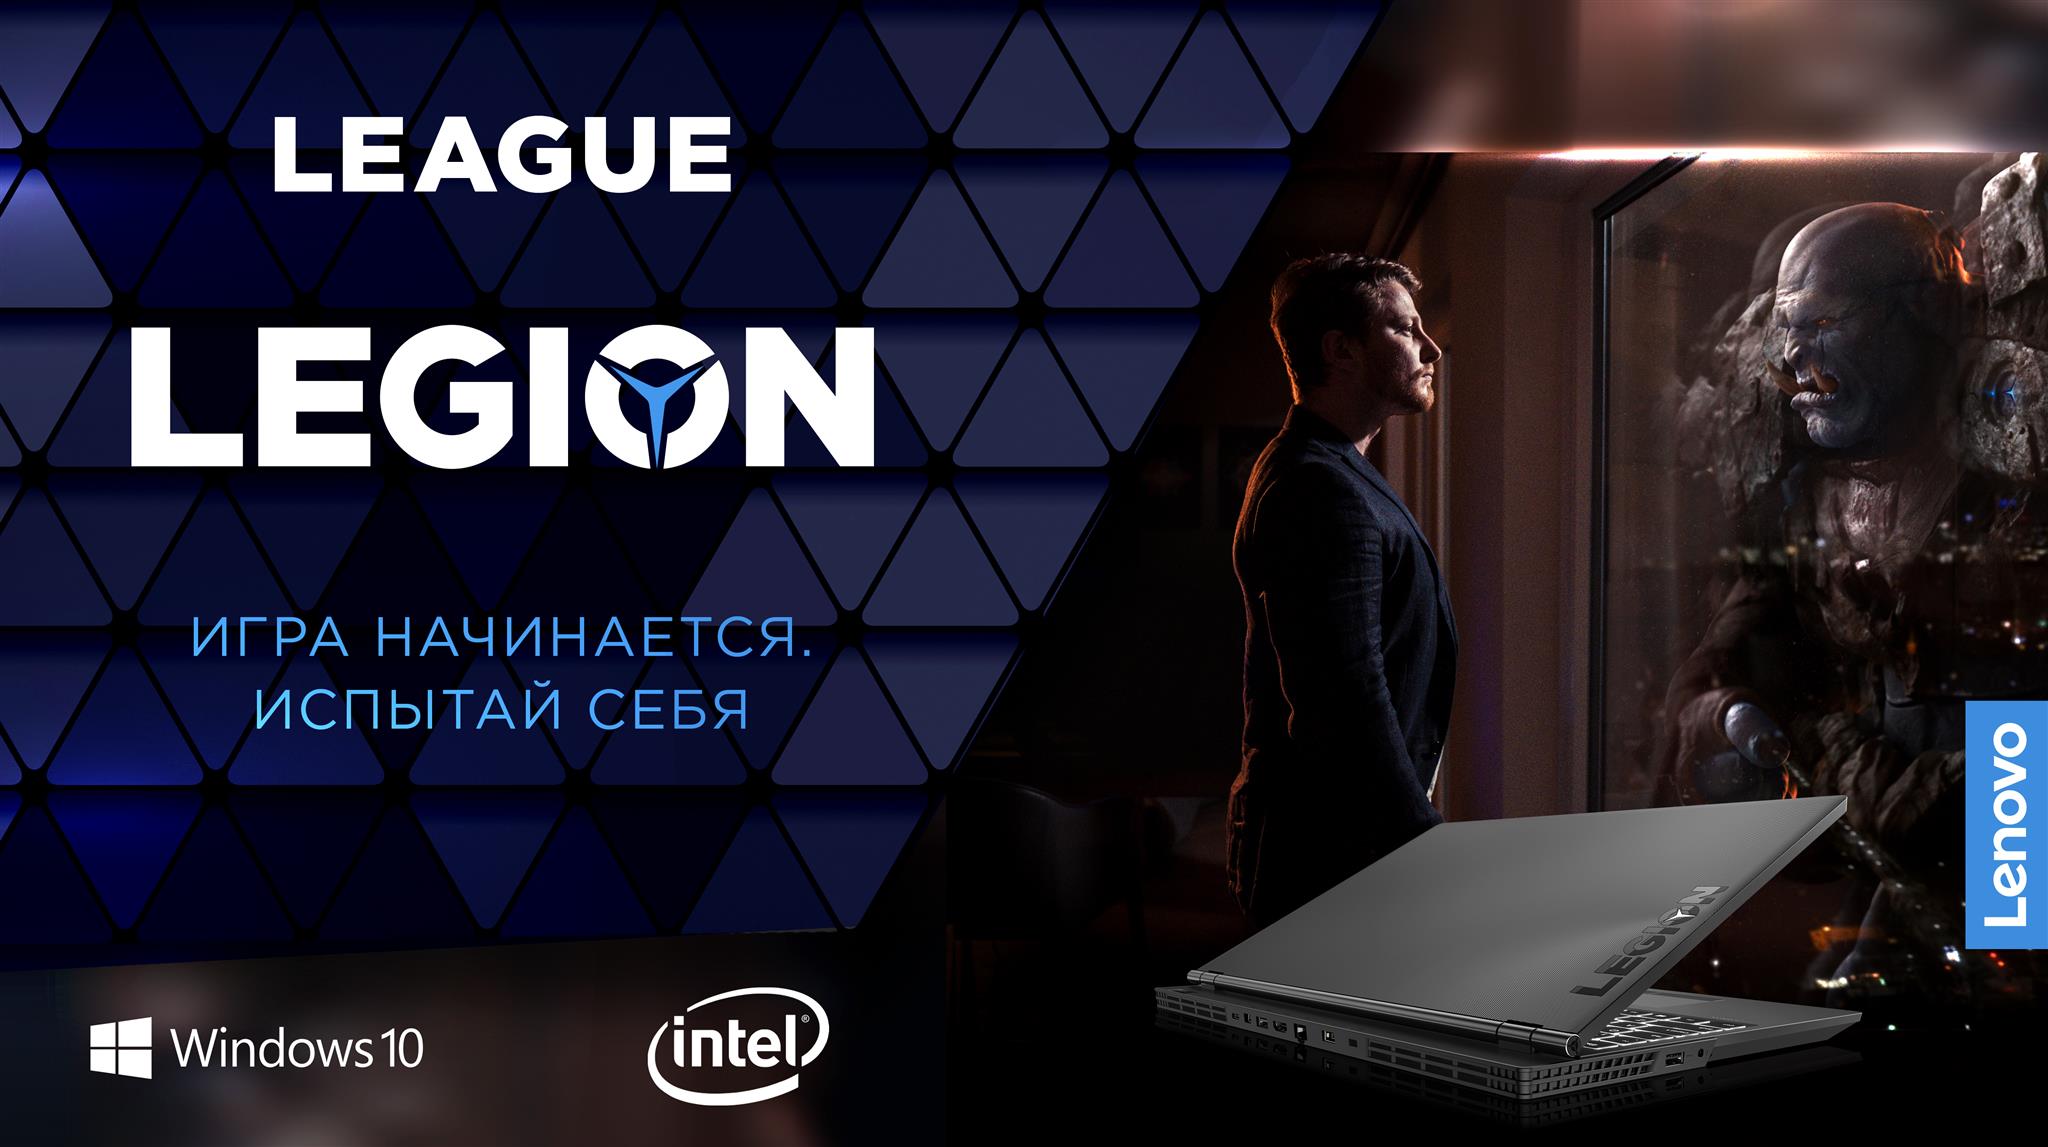 Фінал турніру League Legion відбудеться 29 вересня 2018 року в Києві на Арт-заводі «Платформа»